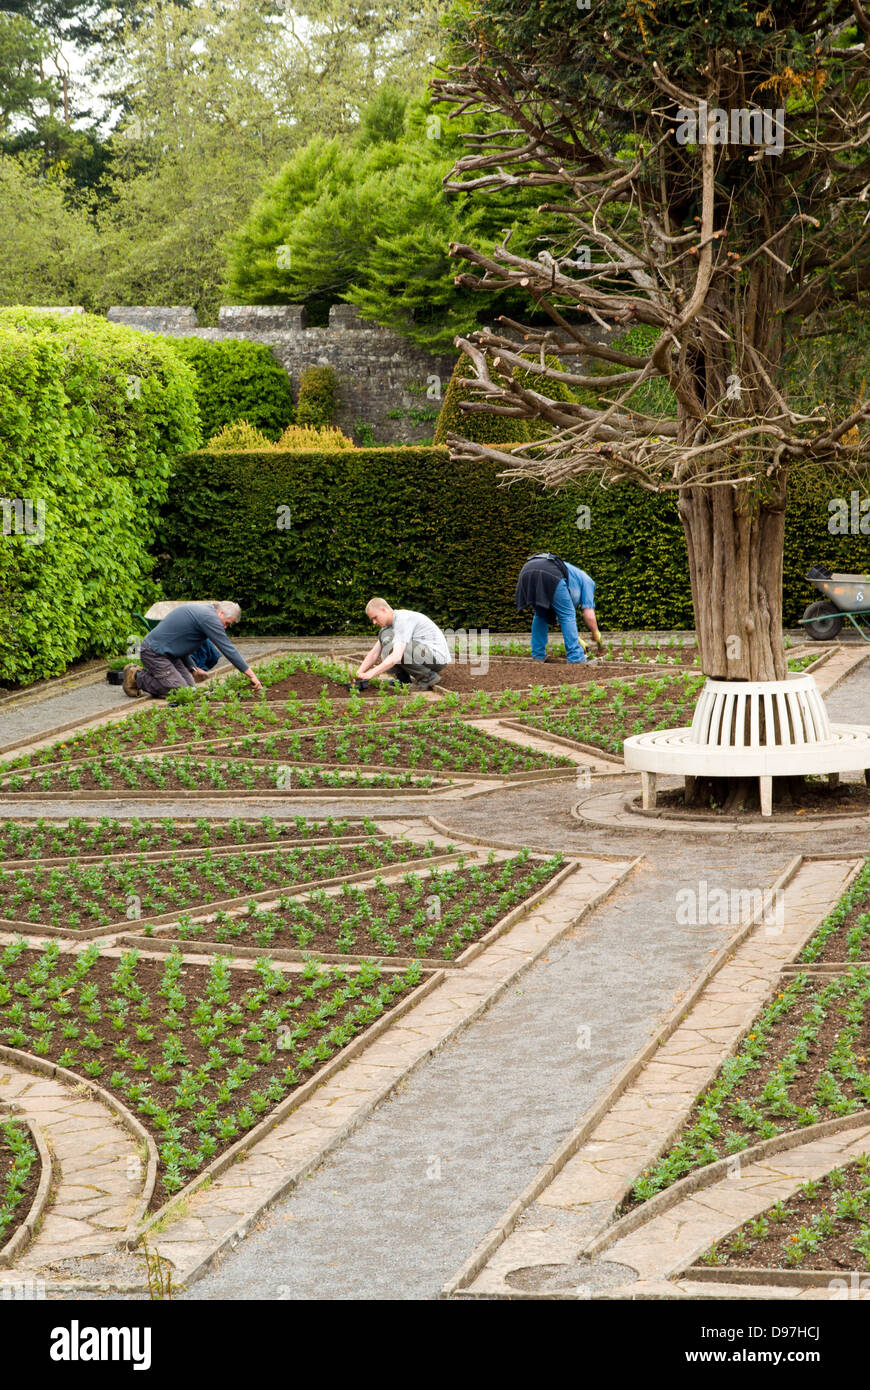 Jardineros trabajando en jardines, museo de historia nacional St Fagans/werin amgueddfa cymru, Cardiff, Gales. Foto de stock